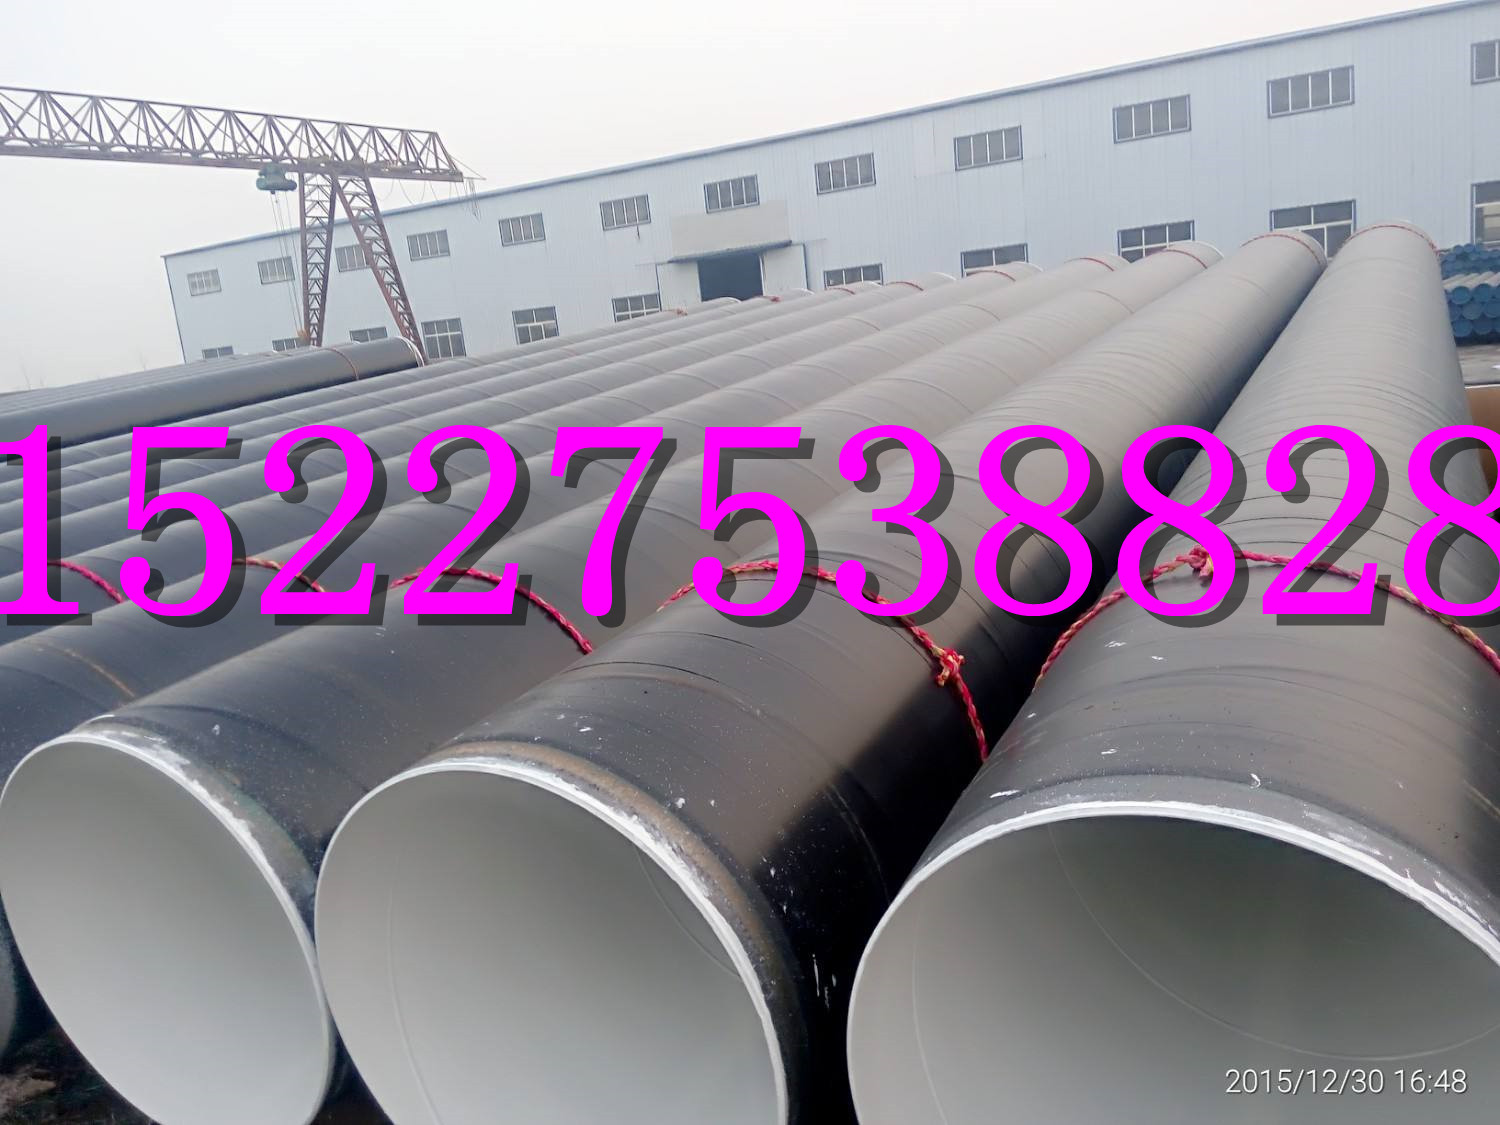 汉中输水管道TPEP防腐钢管生产厂家.